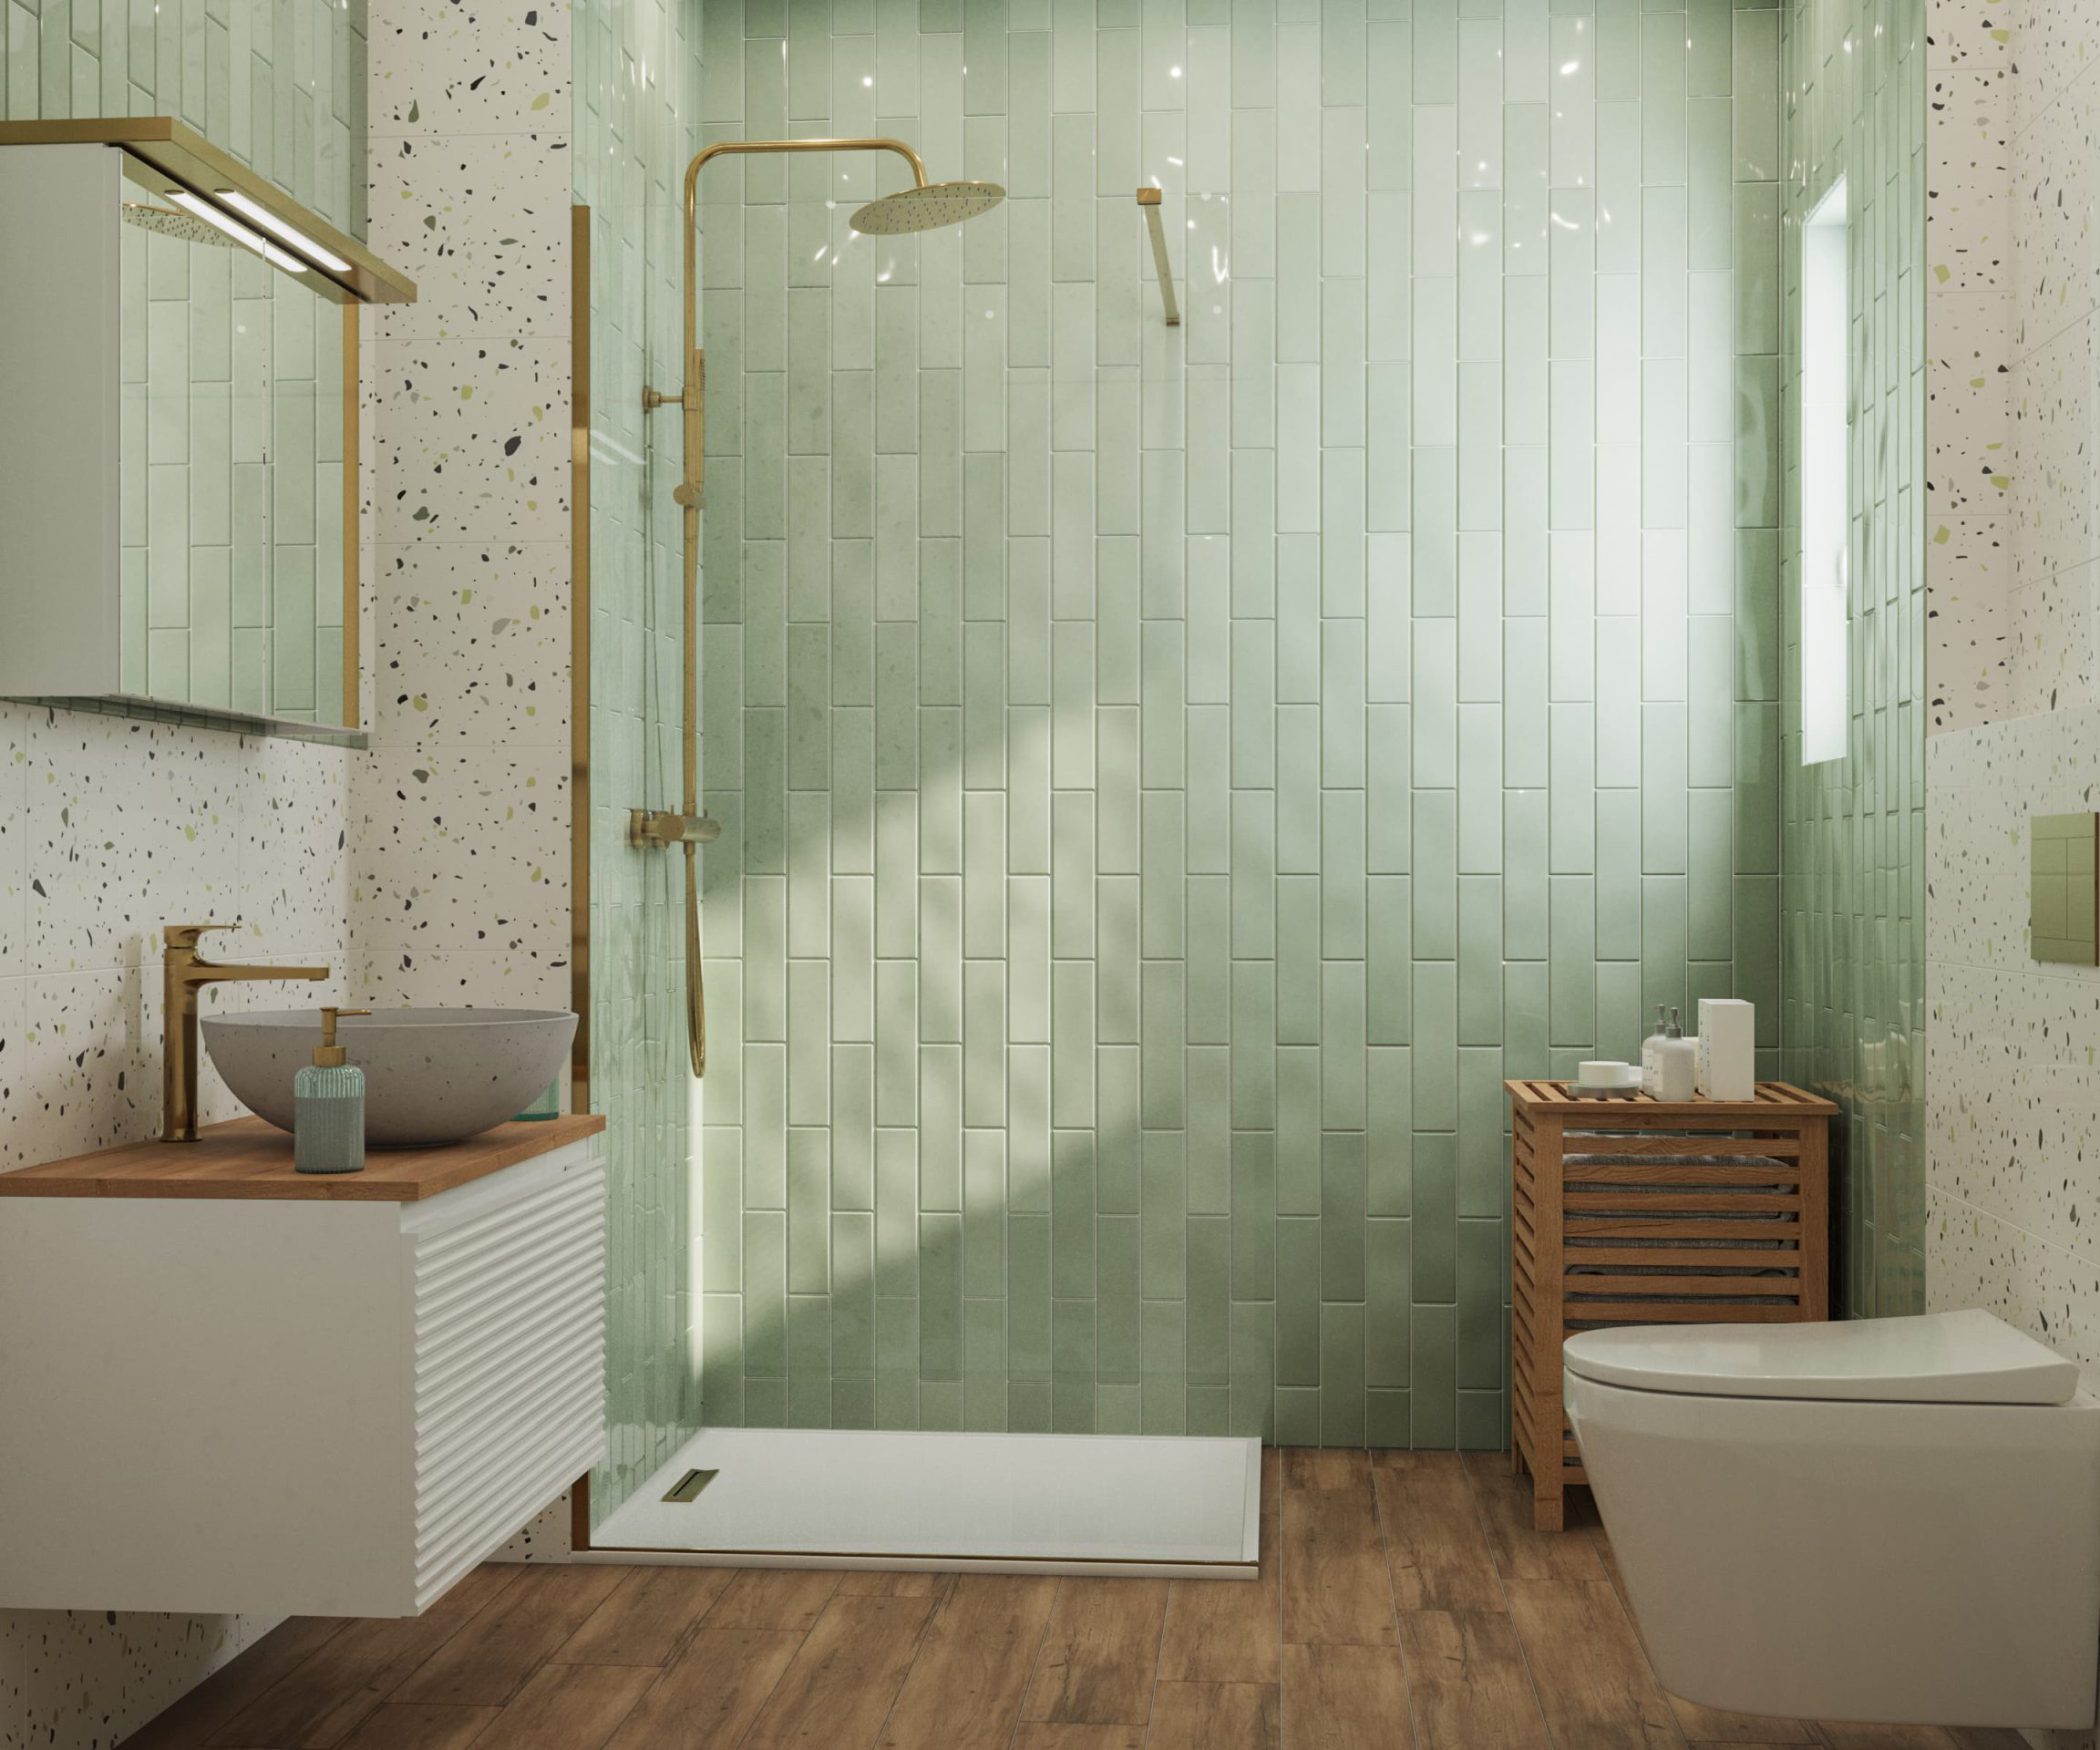 SIKO Moderná kúpeľňa s terrazzom a tyrkysovým obkladom, zlaté doplnky, zlatá umývadlová batéria, biely a drevený kúpeľňový nábytok, sprchovací kút